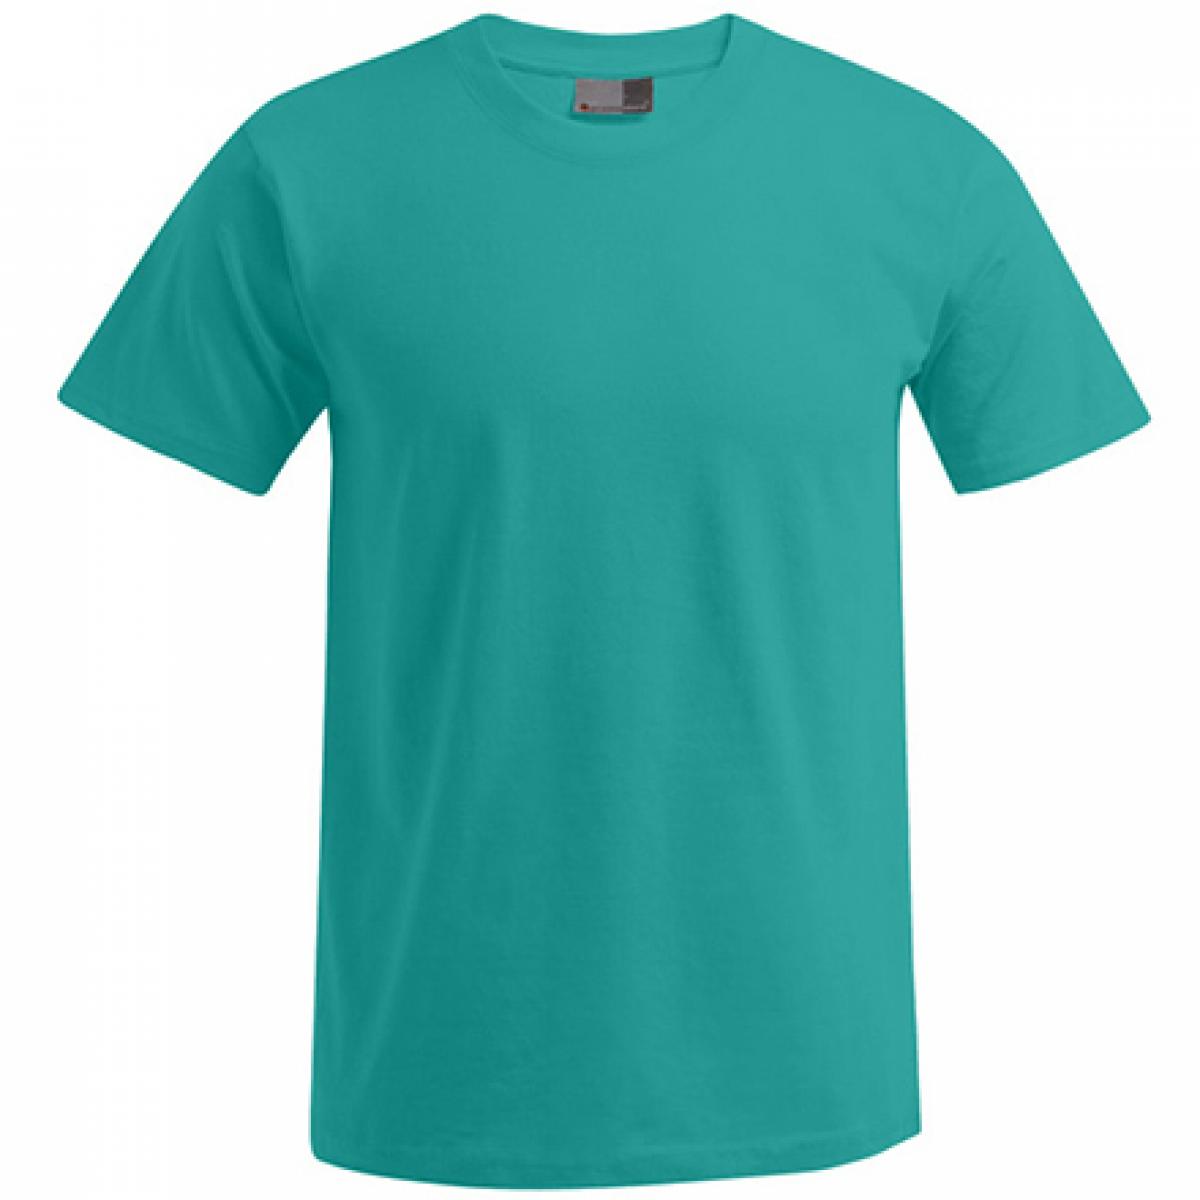 Hersteller: Promodoro Herstellernummer: 3000/3099 Artikelbezeichnung: Men´s Premium Herren T-Shirt - bis 5XL Farbe: Jade